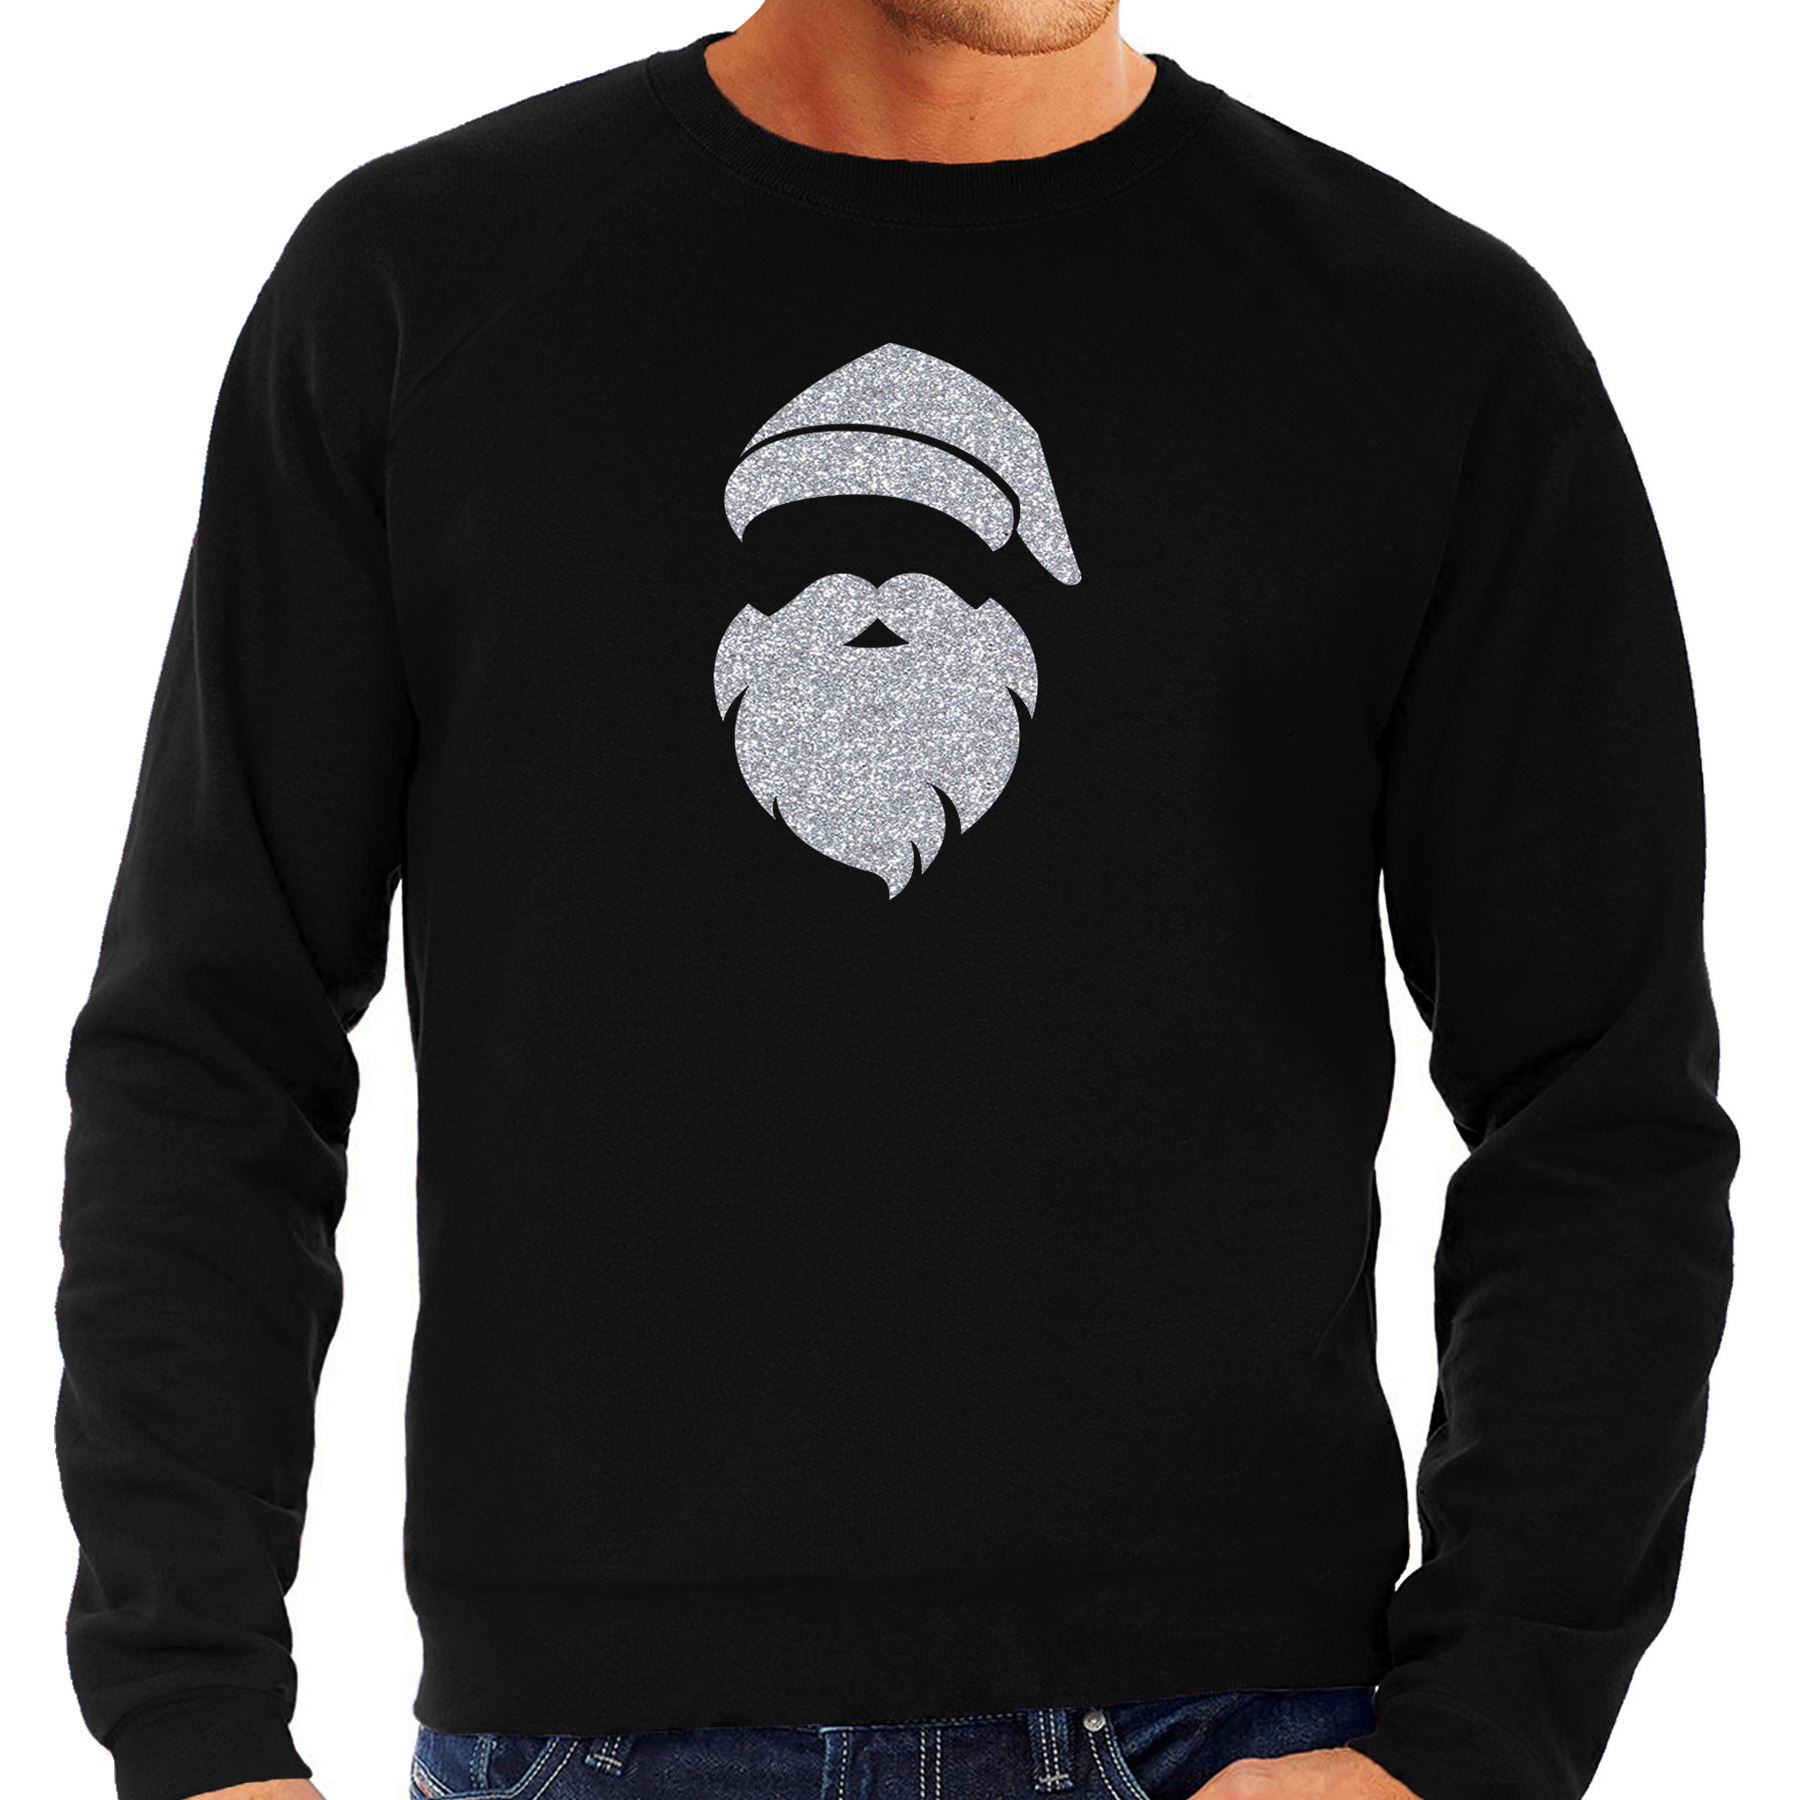 Kerstman hoofd Kerst sweater-trui zwart voor heren met zilveren glitter bedrukking